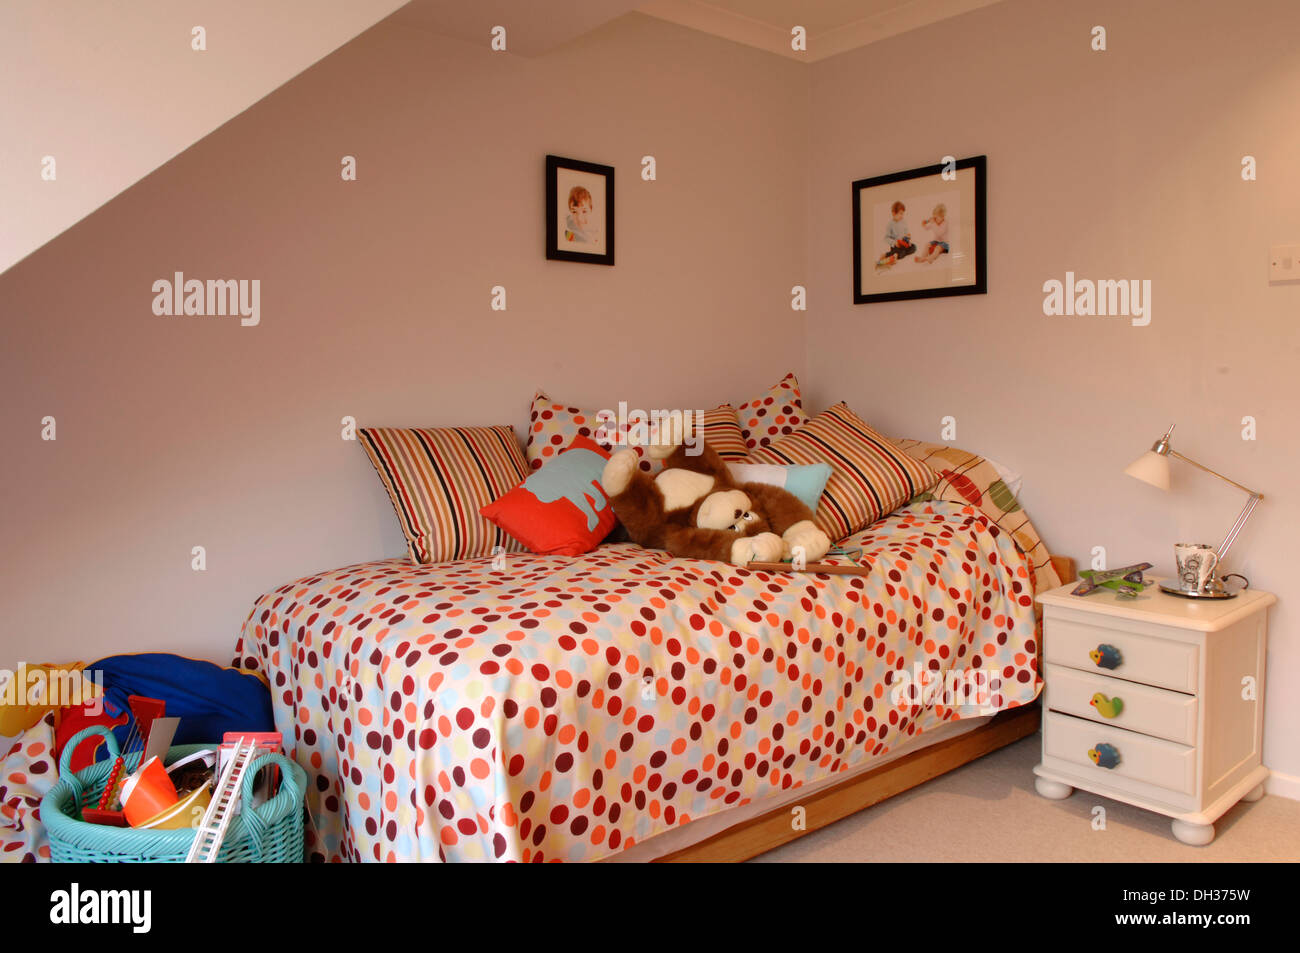 Un piccolo ma ben progettato childs camera da letto con pareti chiare e colorati di spotted quilt, piumone e cuscini bianchi nonché giocattoli morbidi Foto Stock